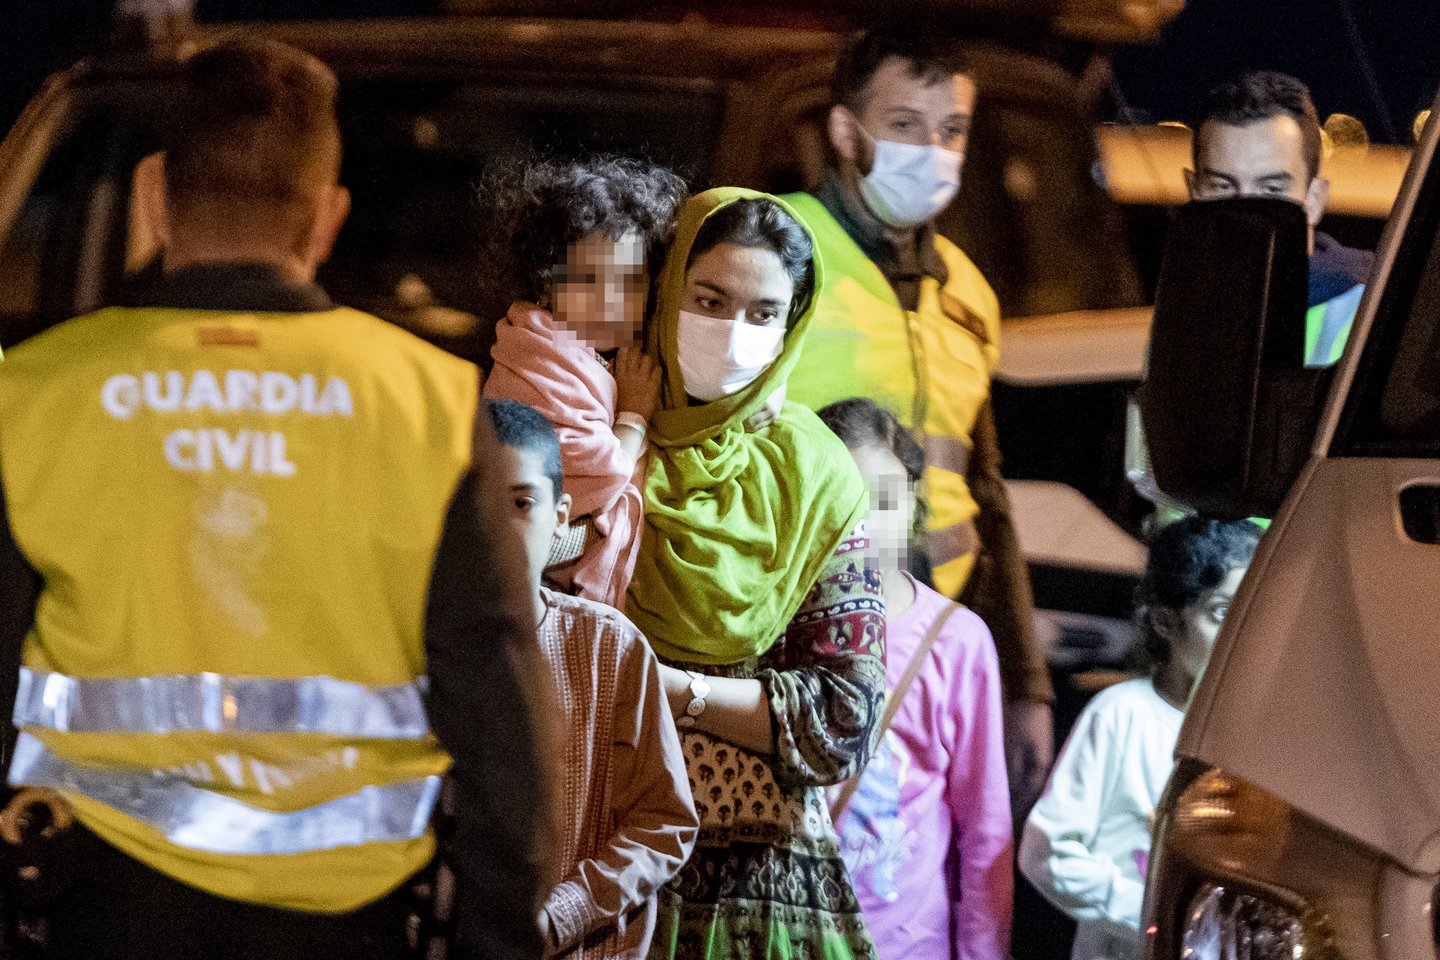  Į Ispaniją atvyko dešimtys evakuotų afganistaniečių.  <br> ZUMA Press/Scanpix nuotr.